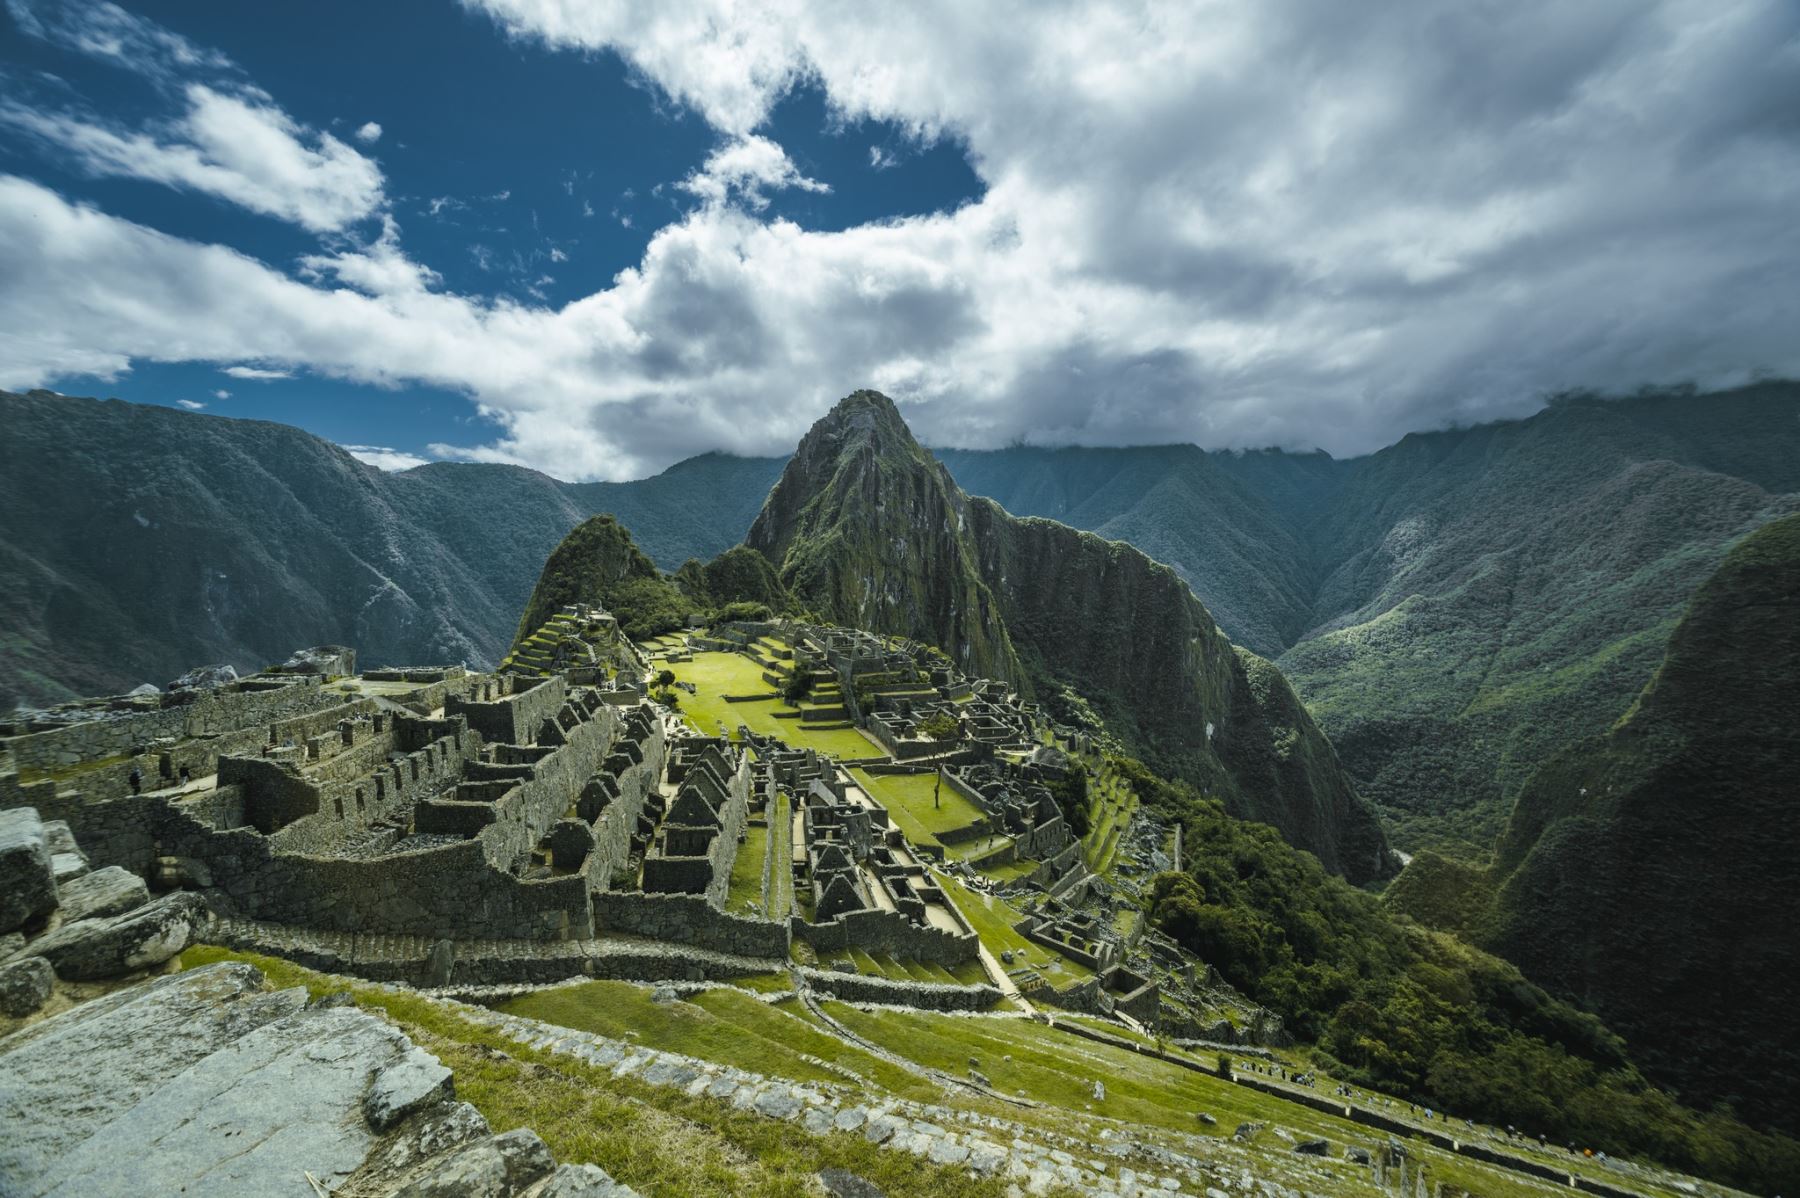 Solo se permitirá el ingreso de visitantes a Machu Picchu de acuerdo al día y horario establecido en el boleto de ingreso, indicó el Ministerio de Cultura